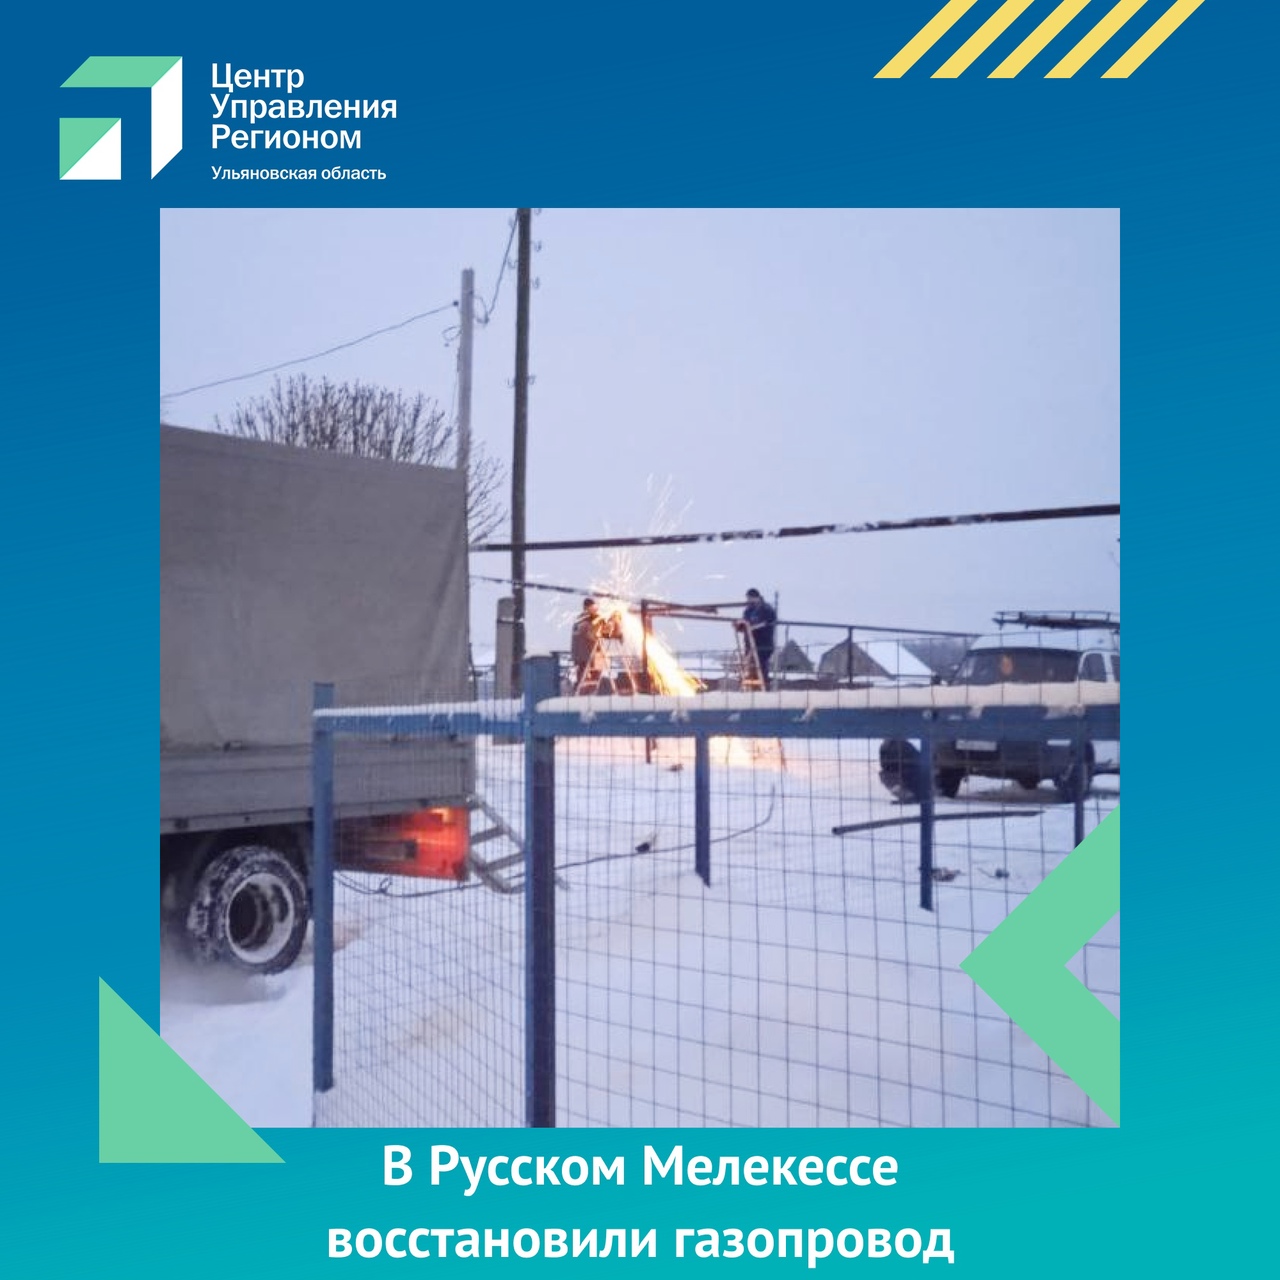 В Русском Мелекессе восстановили газопровод.